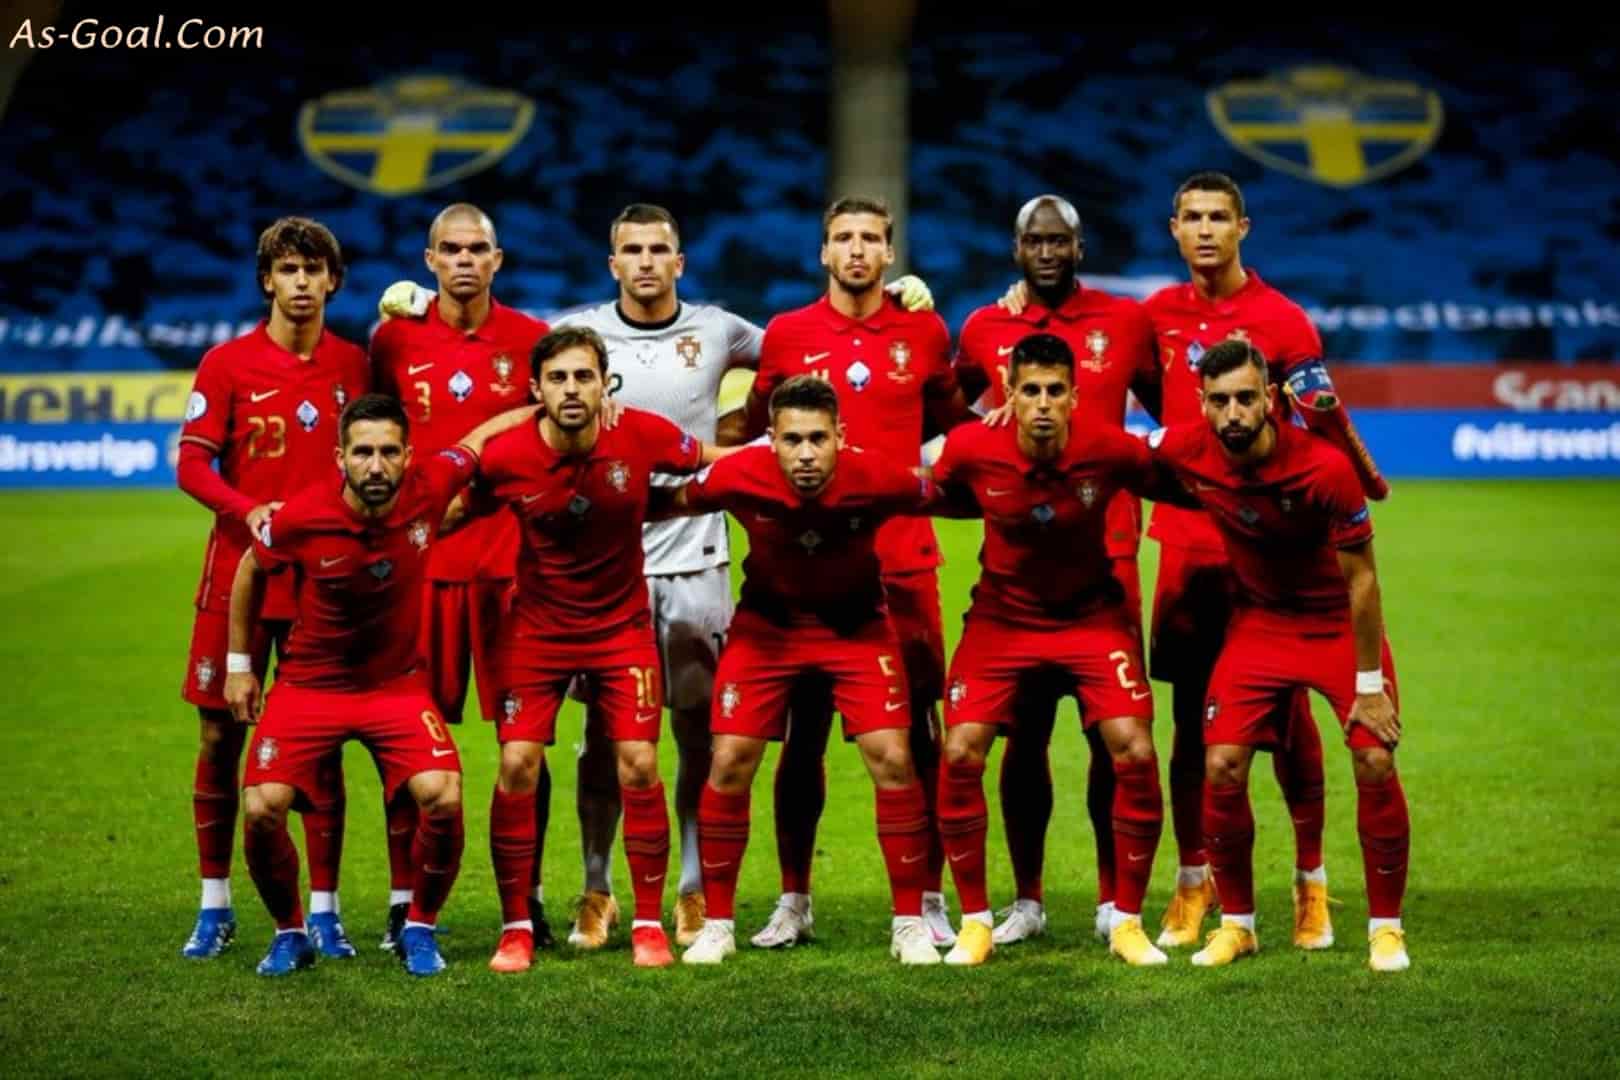 الكشف عن قائمة منتخب البرتغال الرسمية المشاركة في كأس العالم 2022 | AS Goal